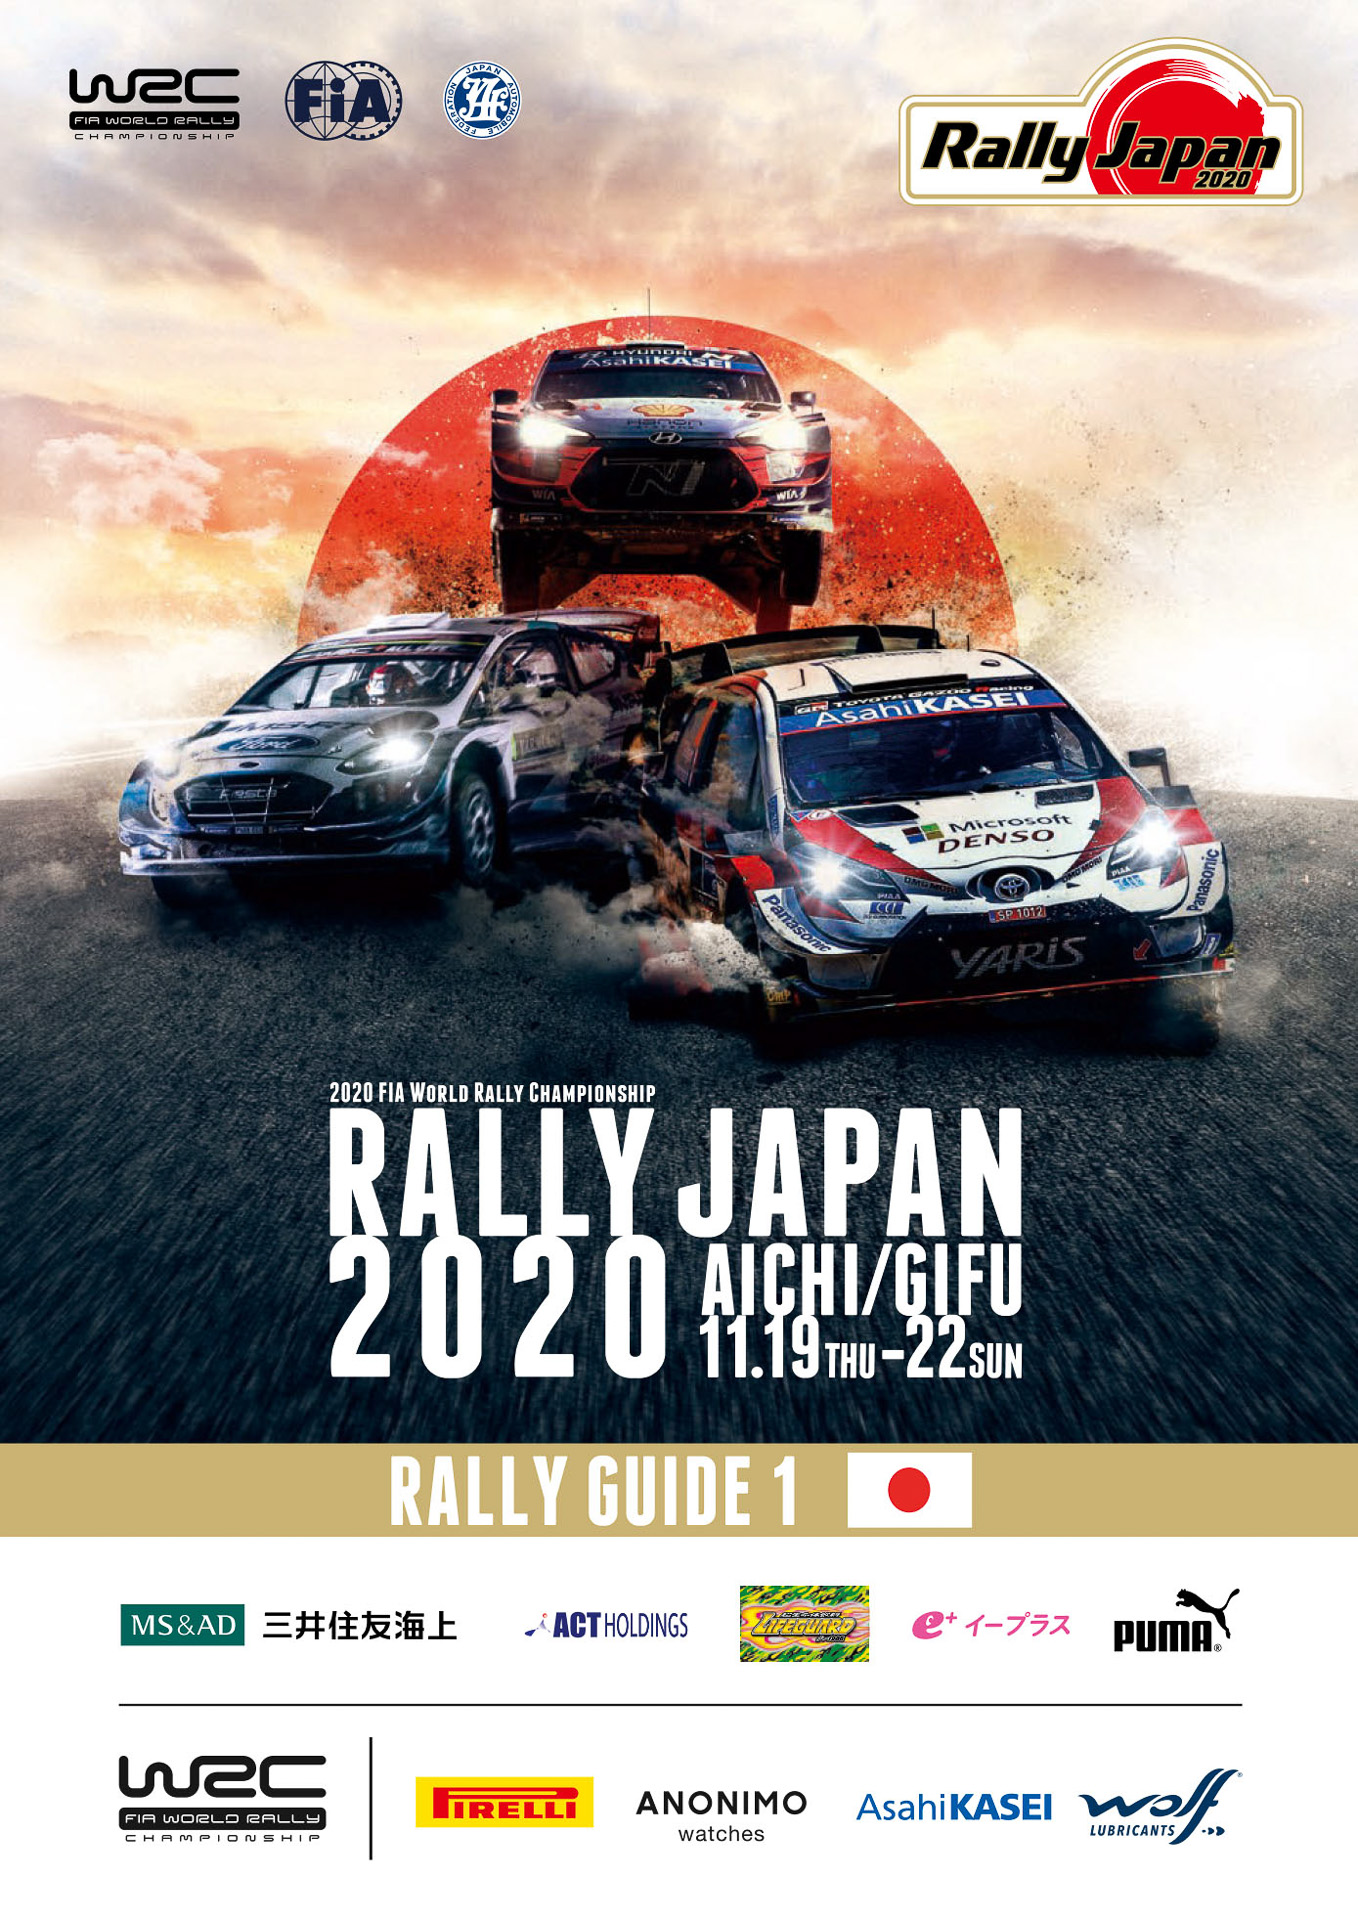 ラリージャパン、「Rally Japan 2020 ラリーガイド1」発行。走行エリア 